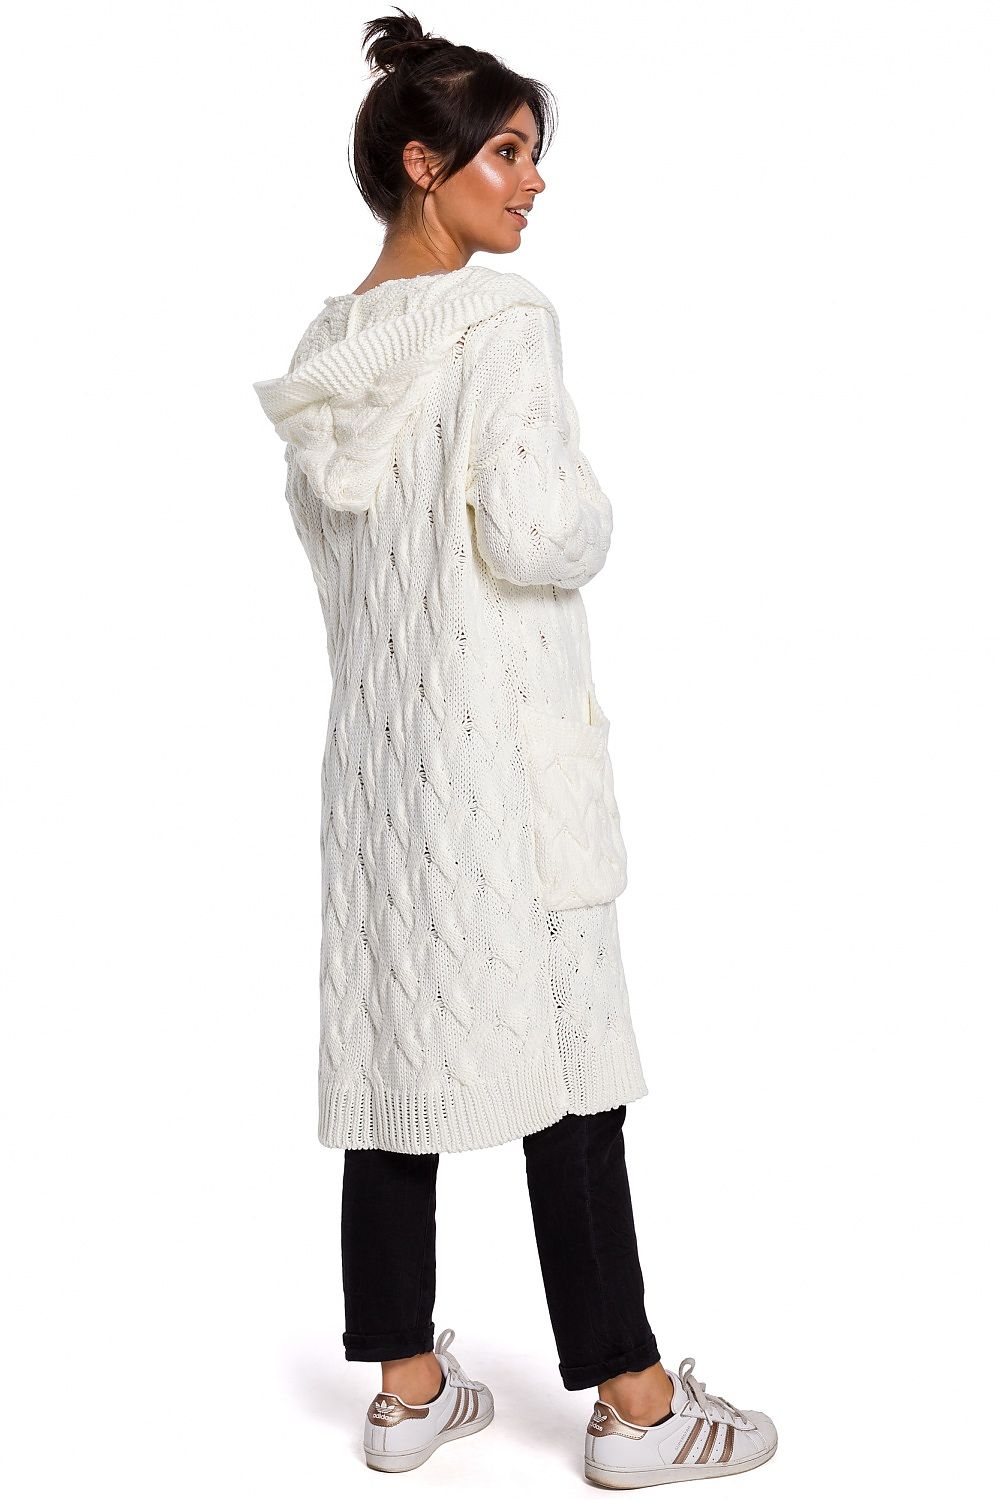 Gebreid lang vest voor vrouwen Gebreide alpaca trui jas met zakken Gebreide maxi jas met knopen Gebreid alpaca vest Kleding Dameskleding Sweaters Vesten 